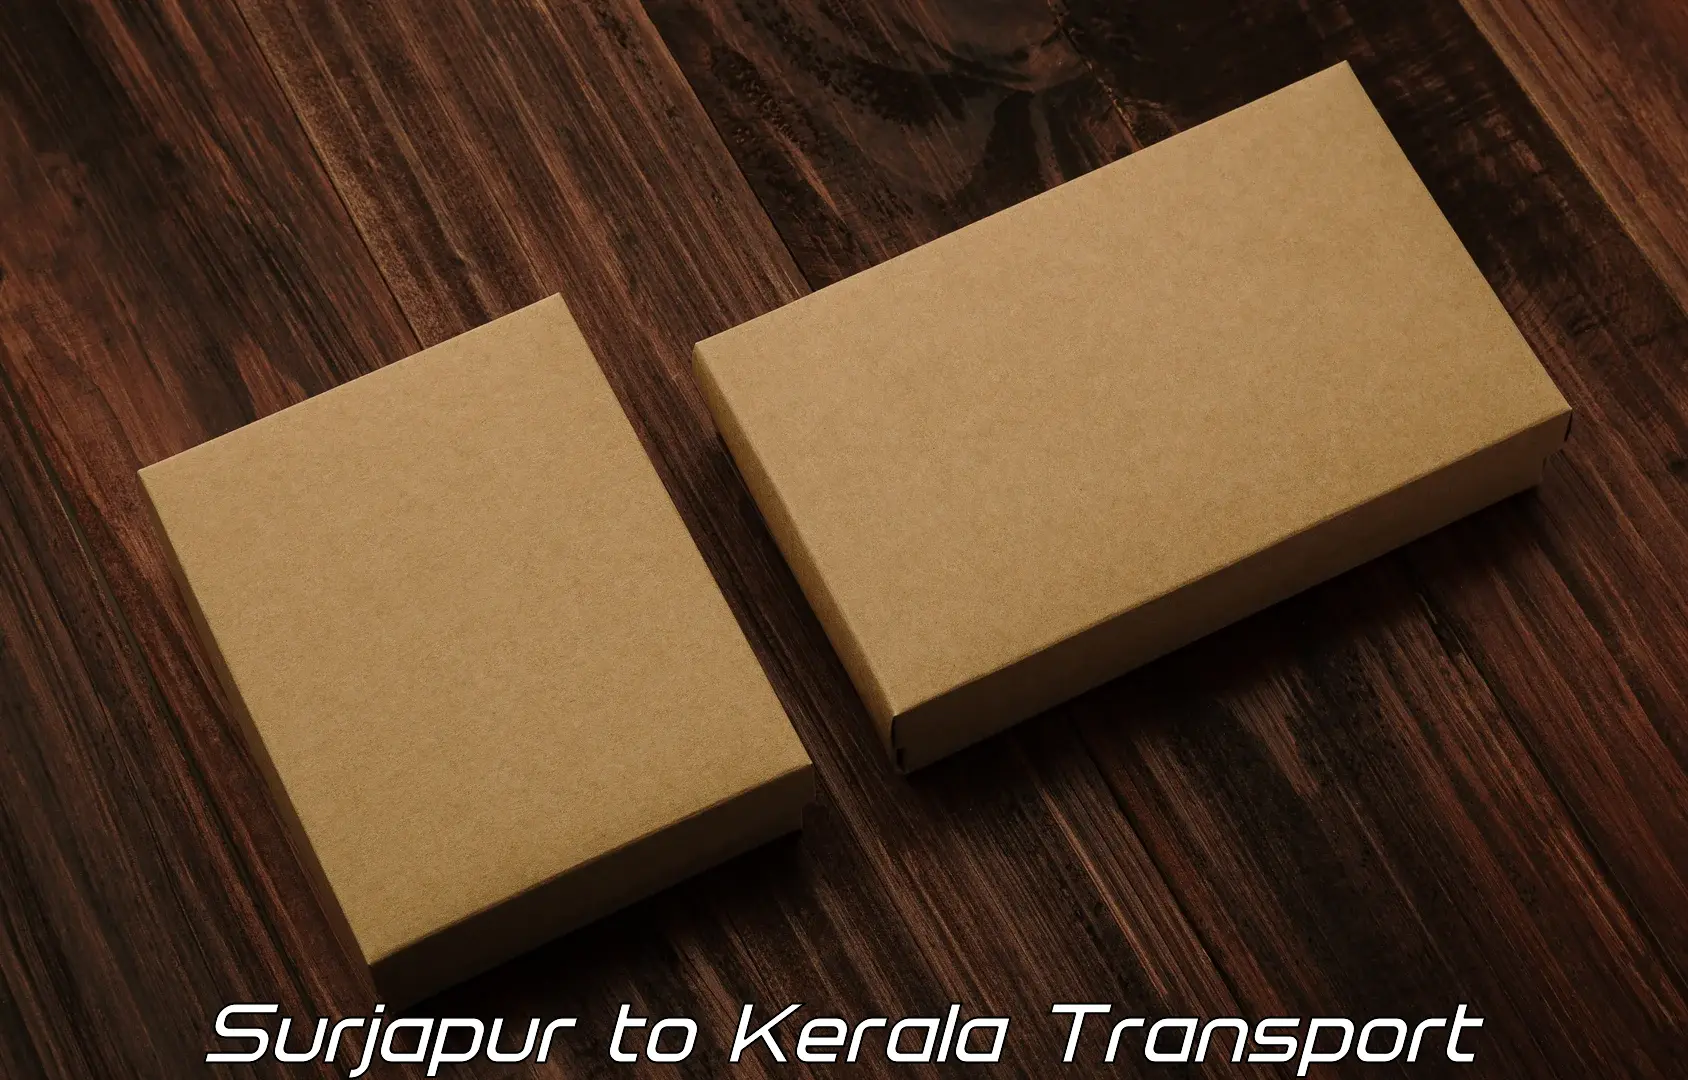 Cargo train transport services Surjapur to Parippally